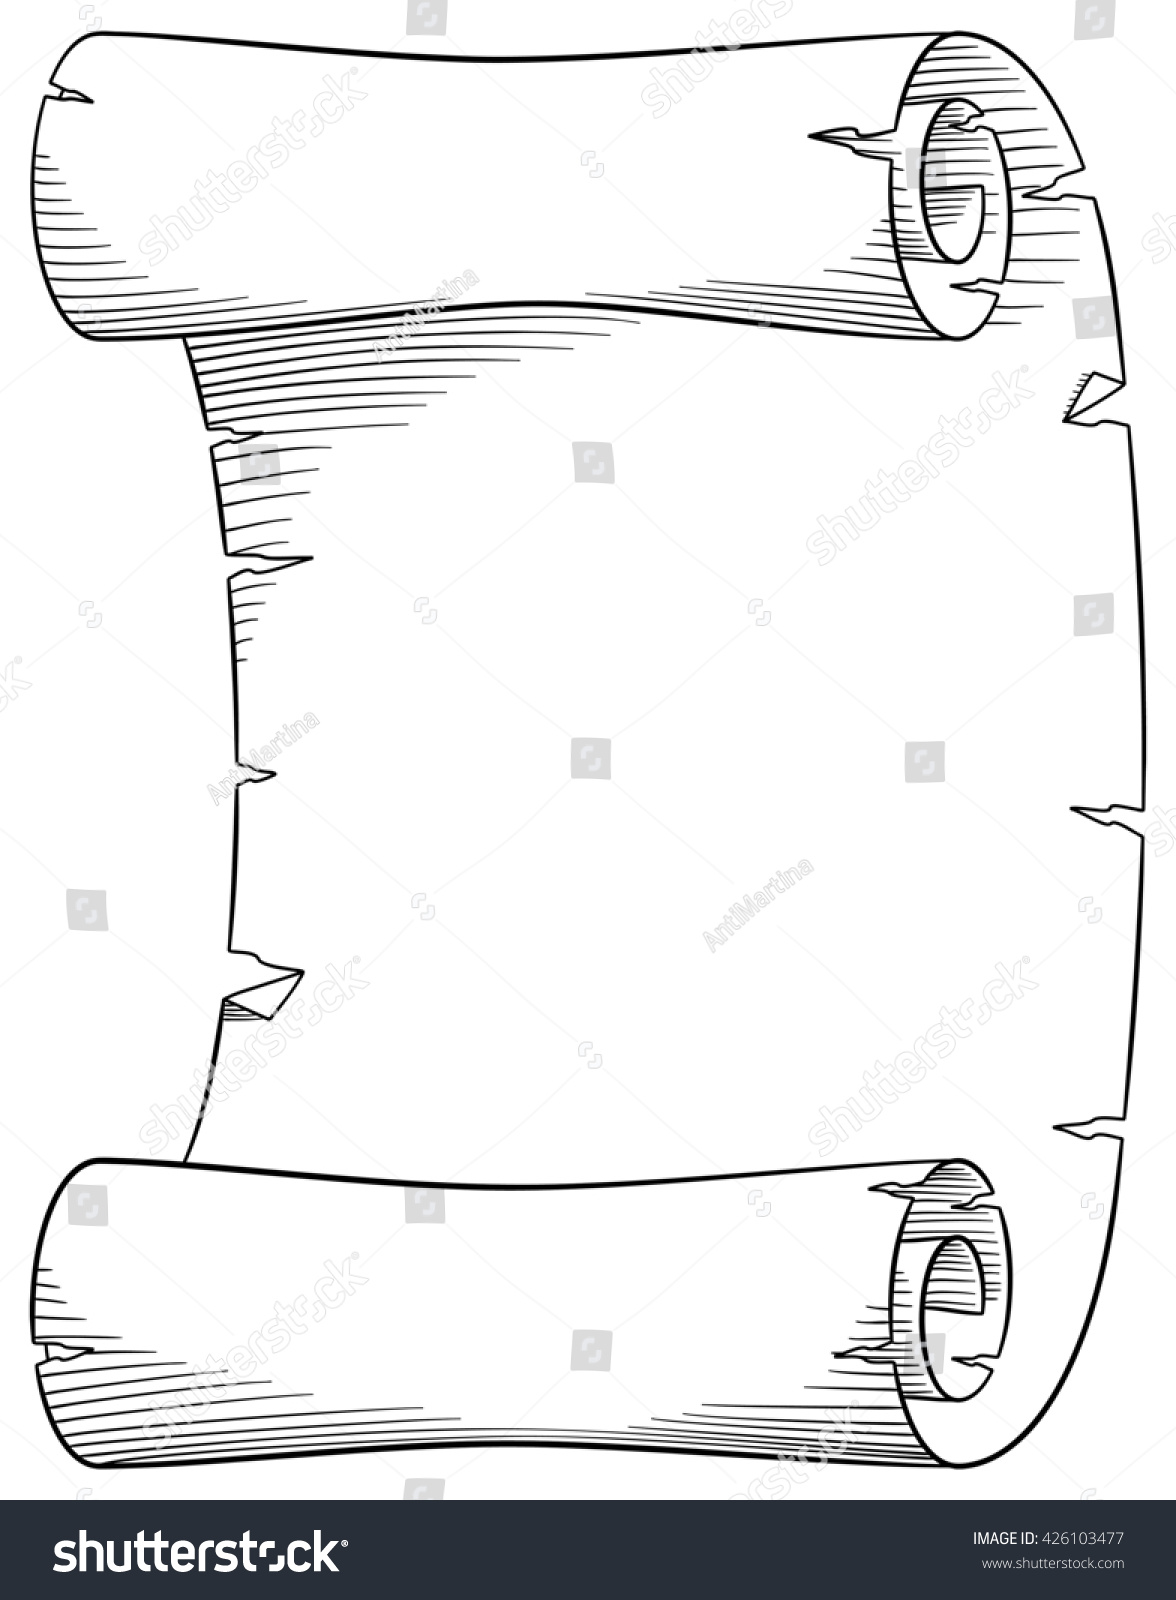 Картинка свиток бумаги с печатью